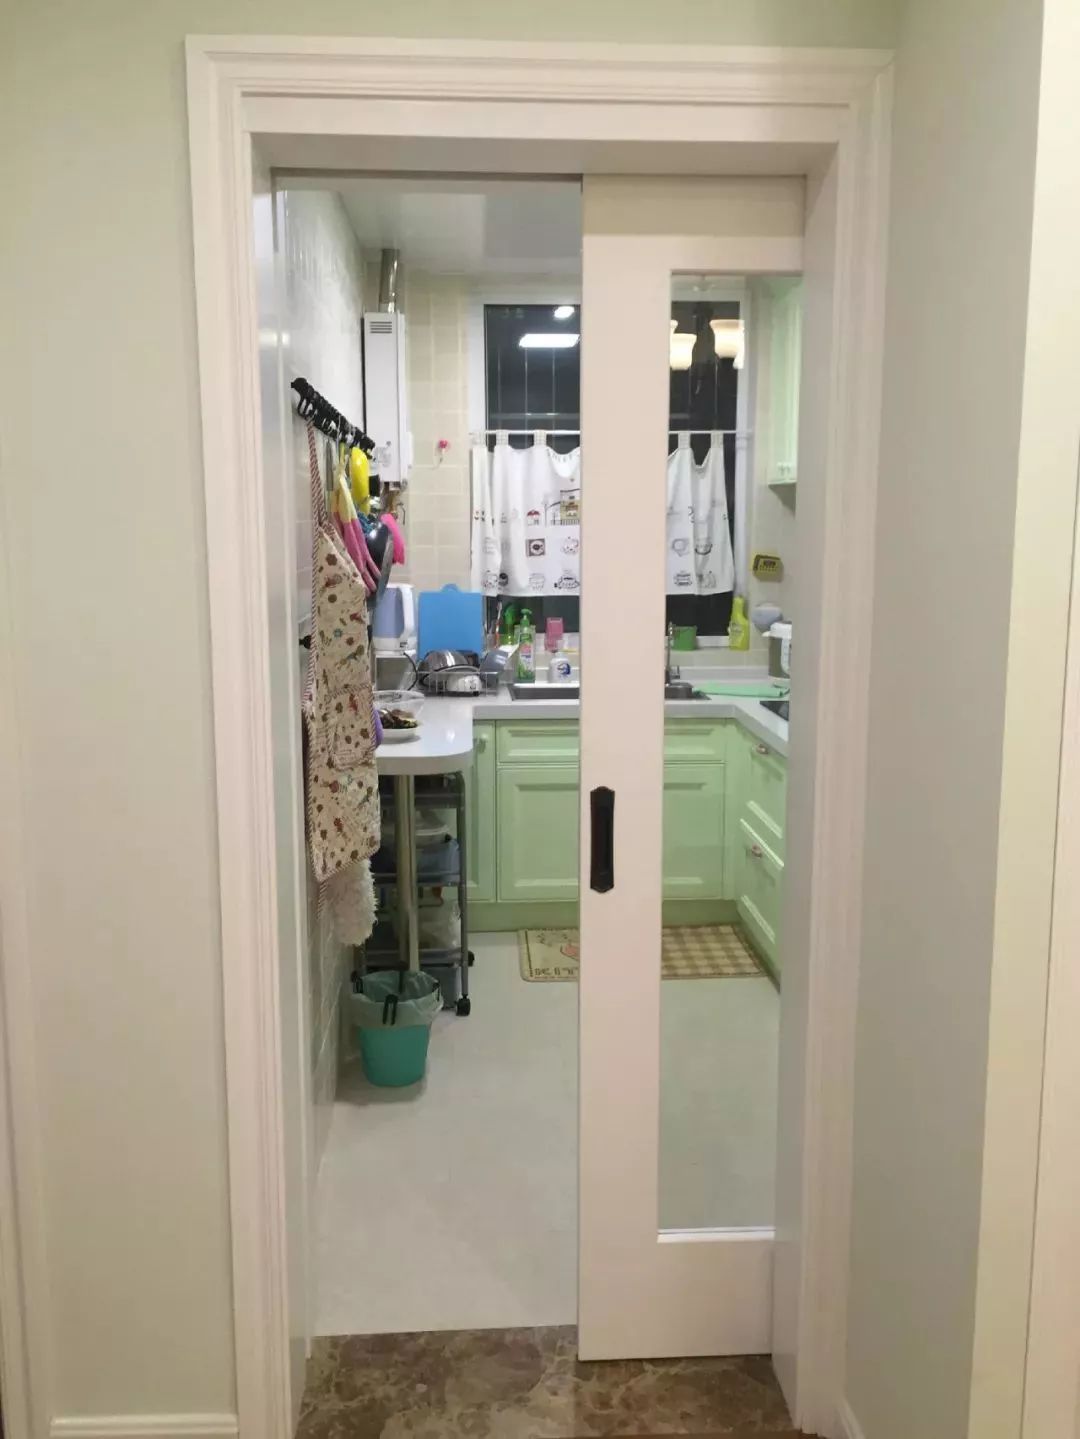 厨房门室内装修设计效果图 厨房装修门的搭配设计